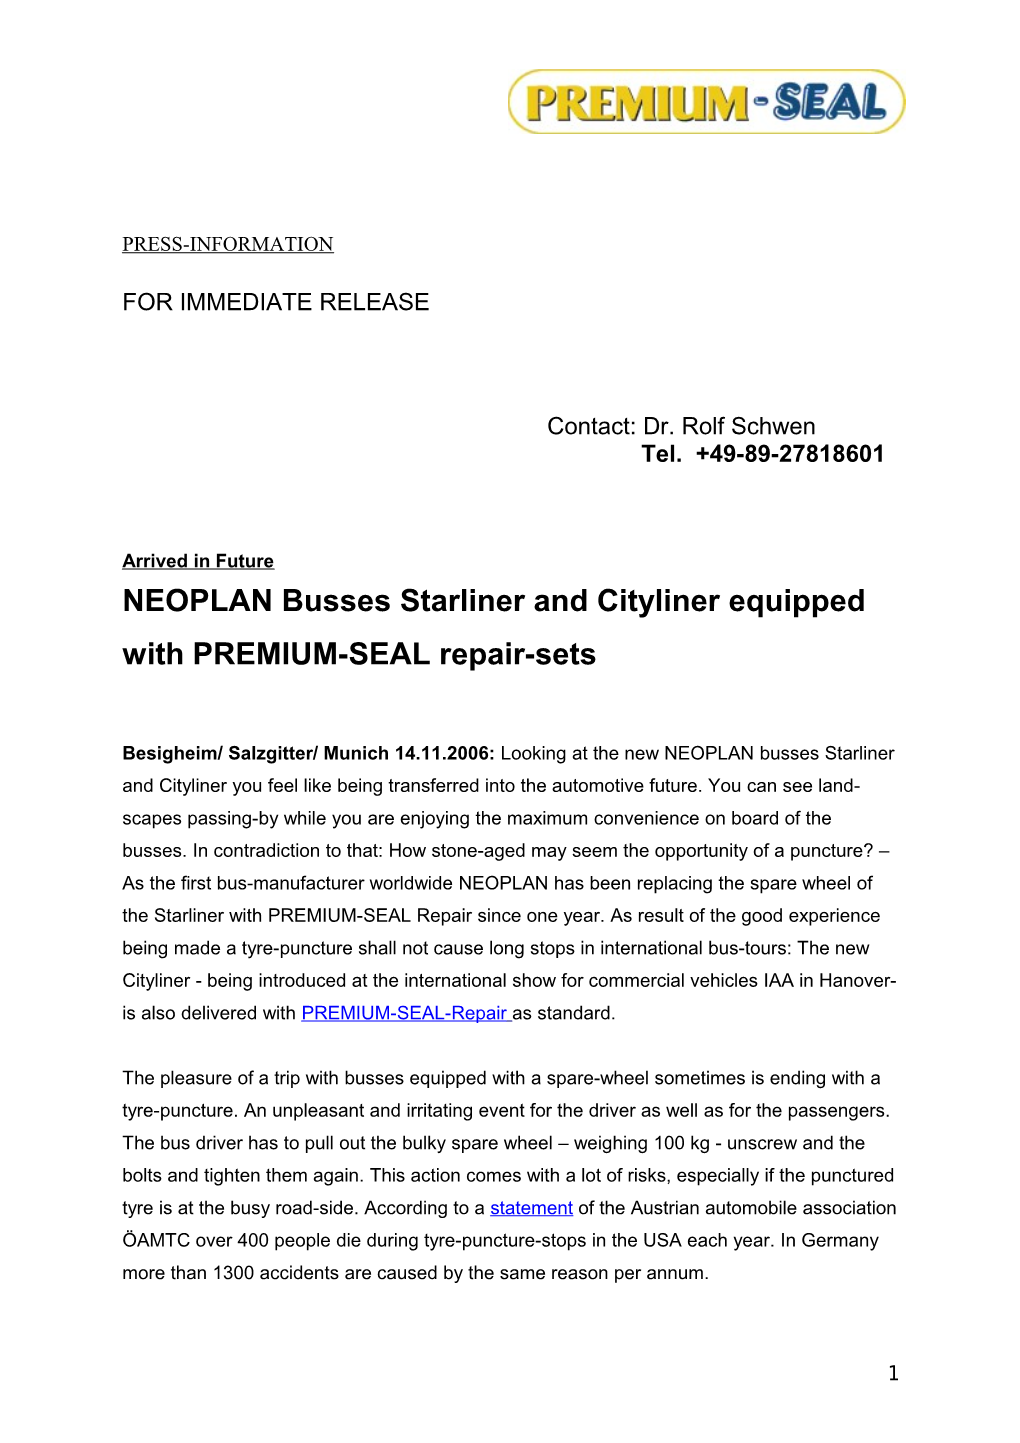 NEOPLAN Reisbusse Starliner Und Cityliner Mit Premiums-Seal Pannenset Ausgerüstet